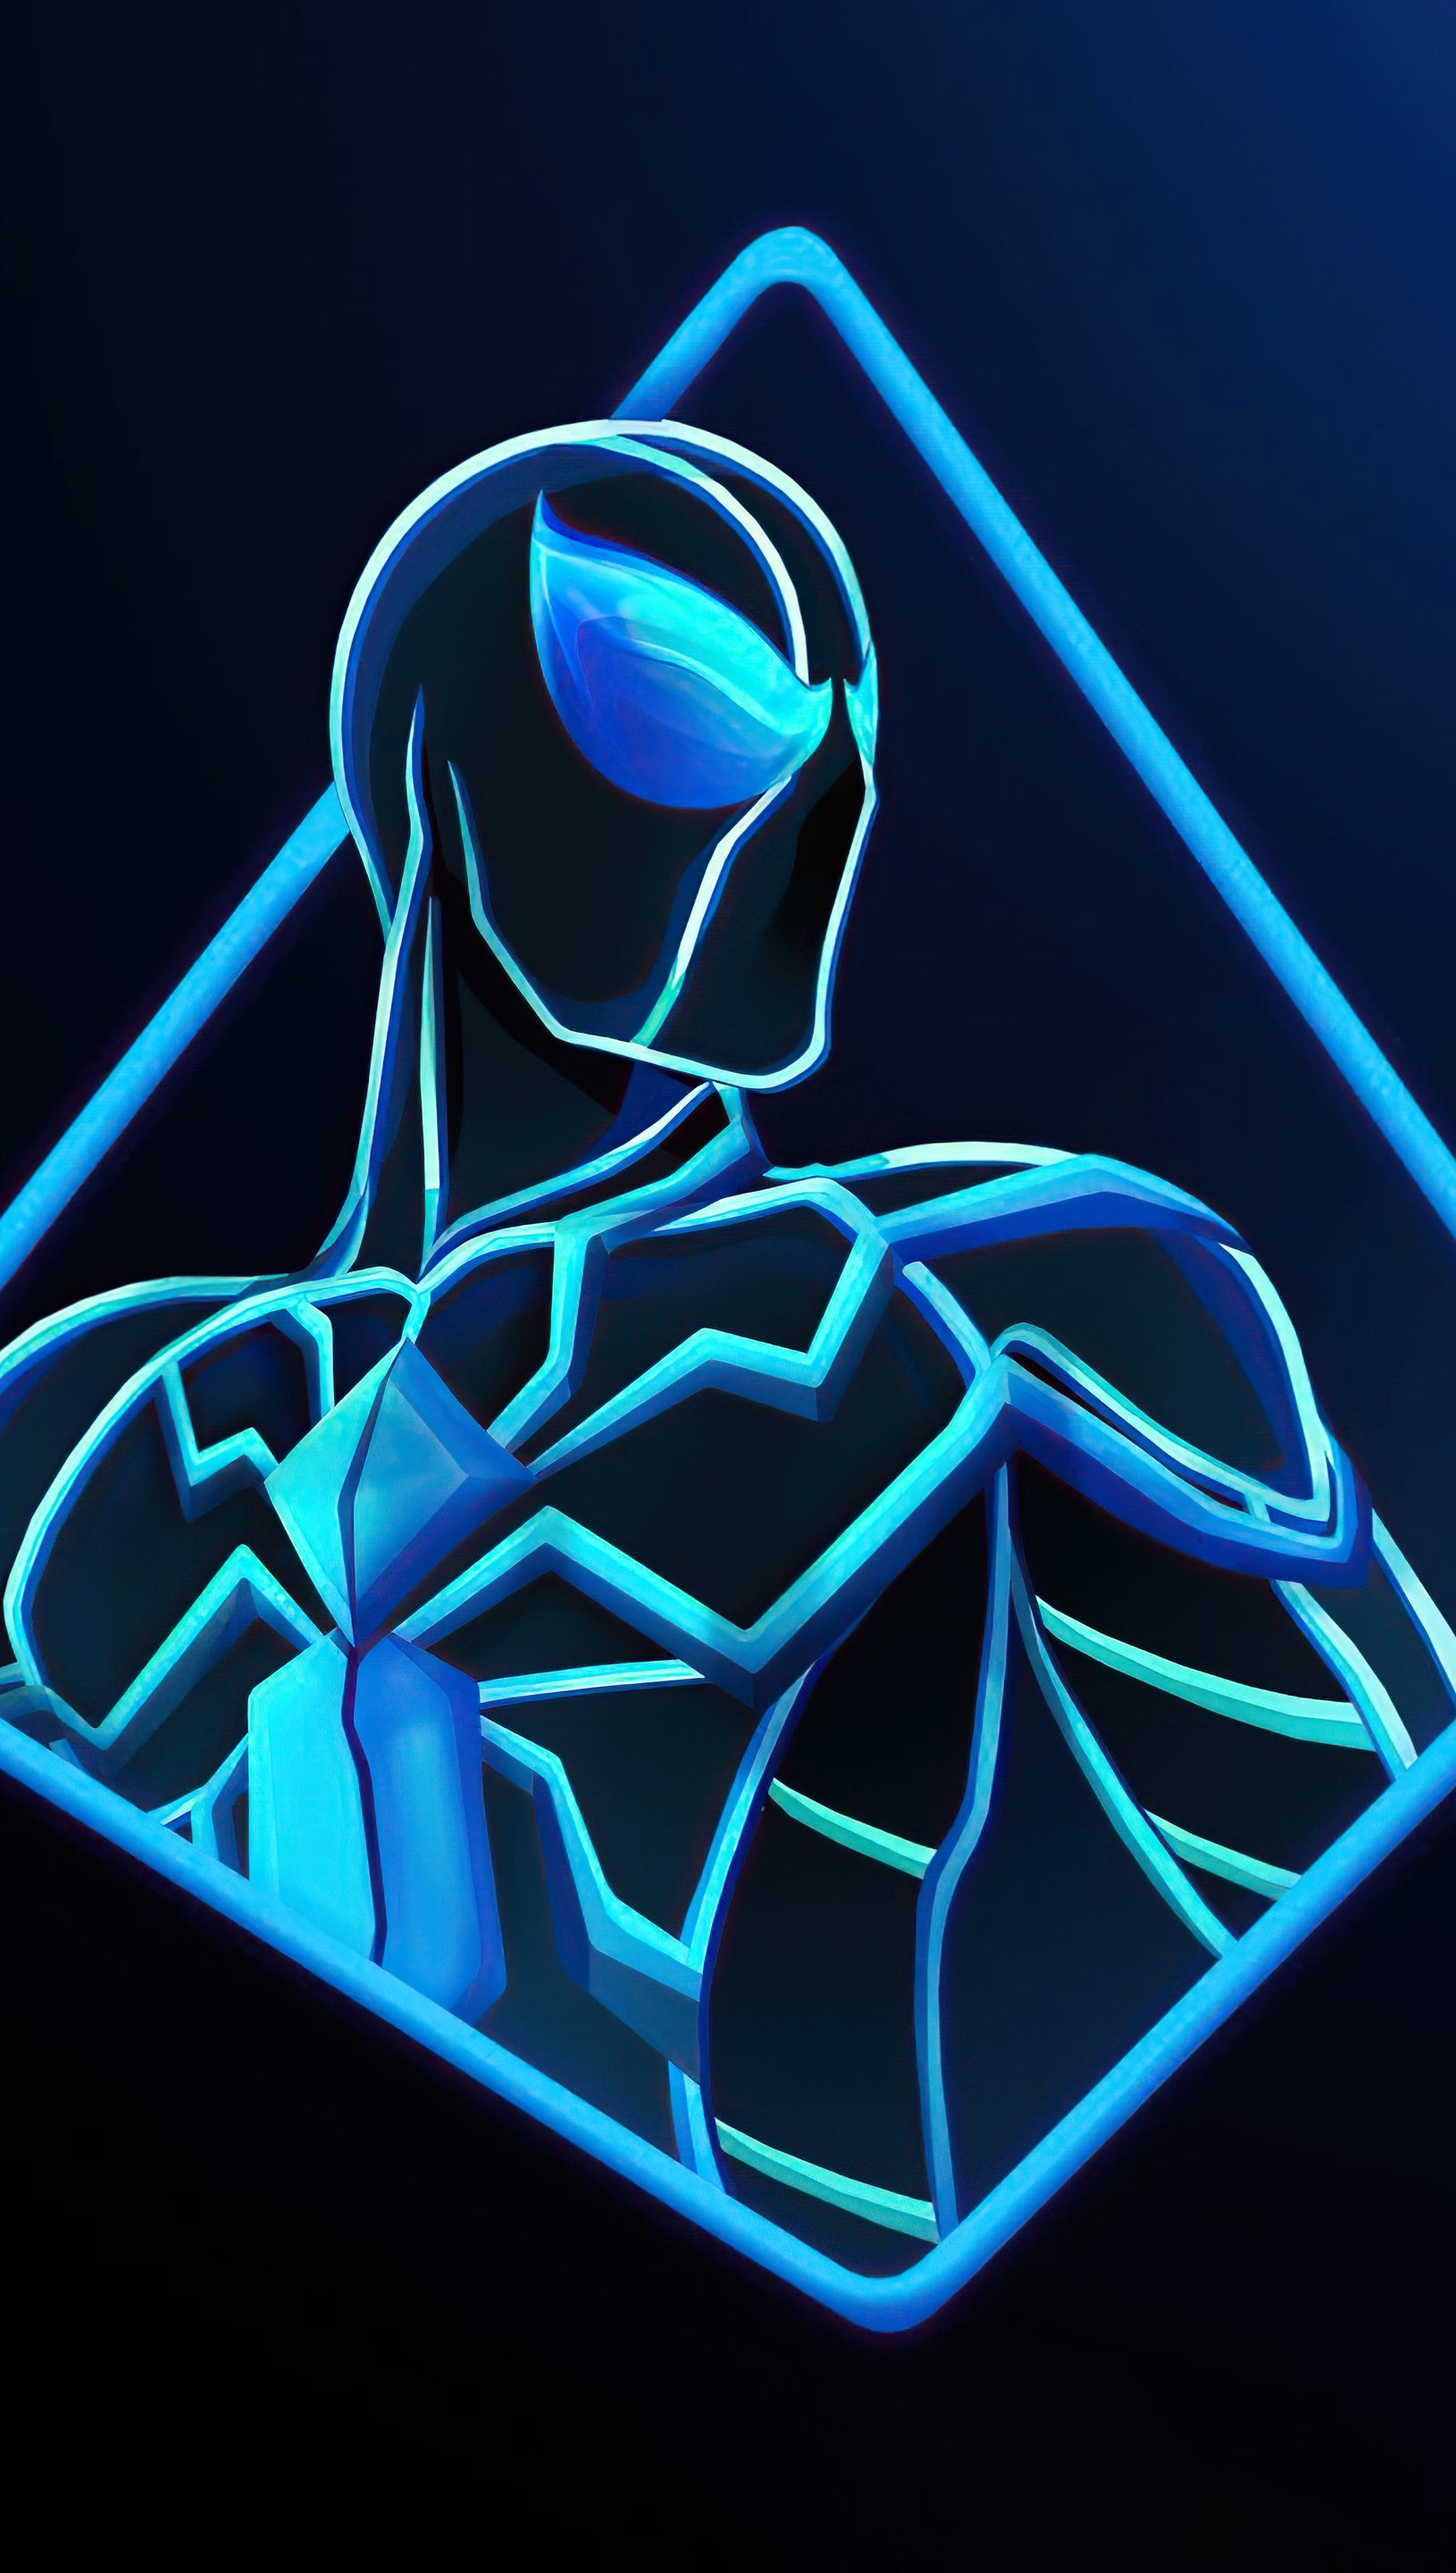 spiderman blue background